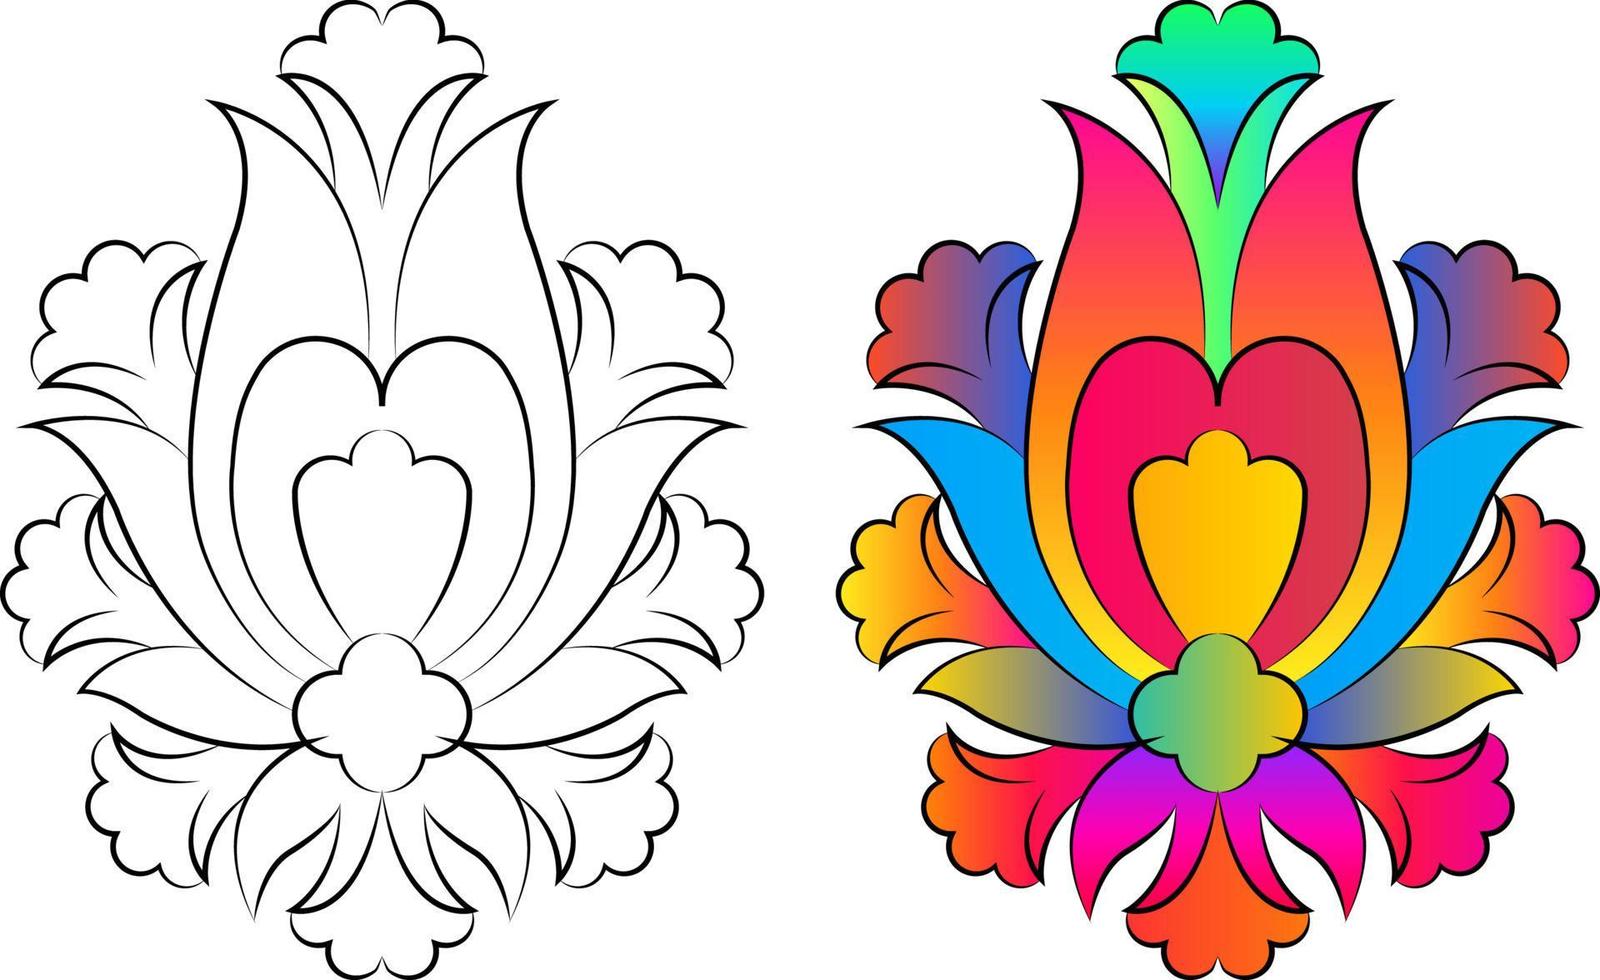 Stickerei. gestickte Designelemente mit Blumen und Blättern im Vintage-Stil auf weißem Hintergrund. Vektorillustration auf Lager vektor